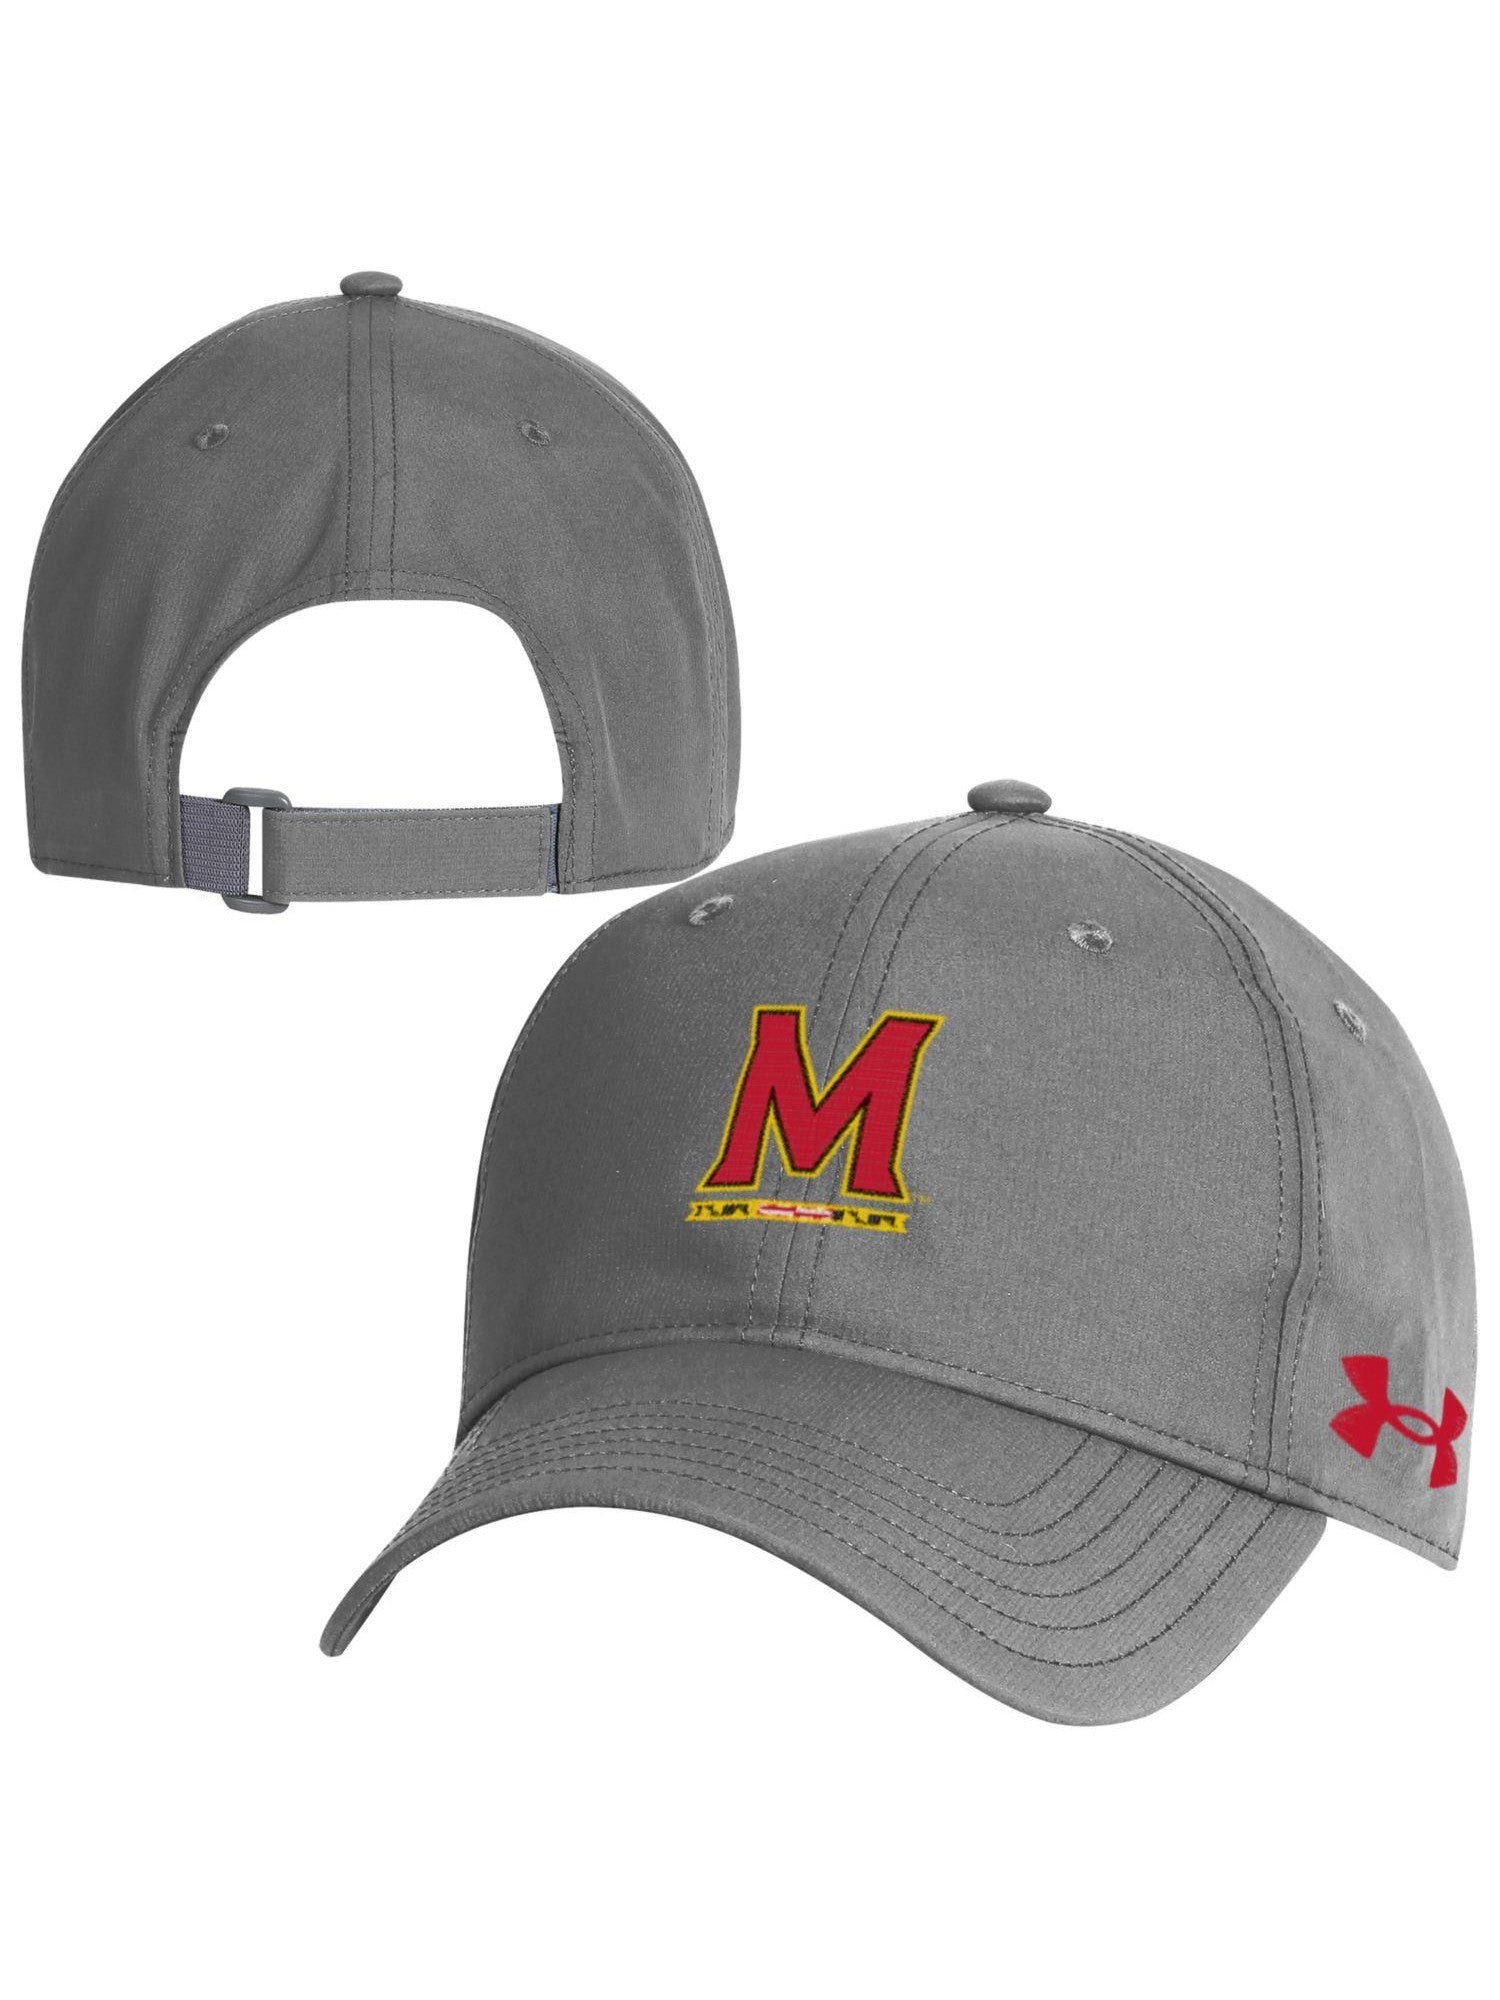 Under Armor University of Maryland Baseball Cap (Grey) – Maryland Gifts